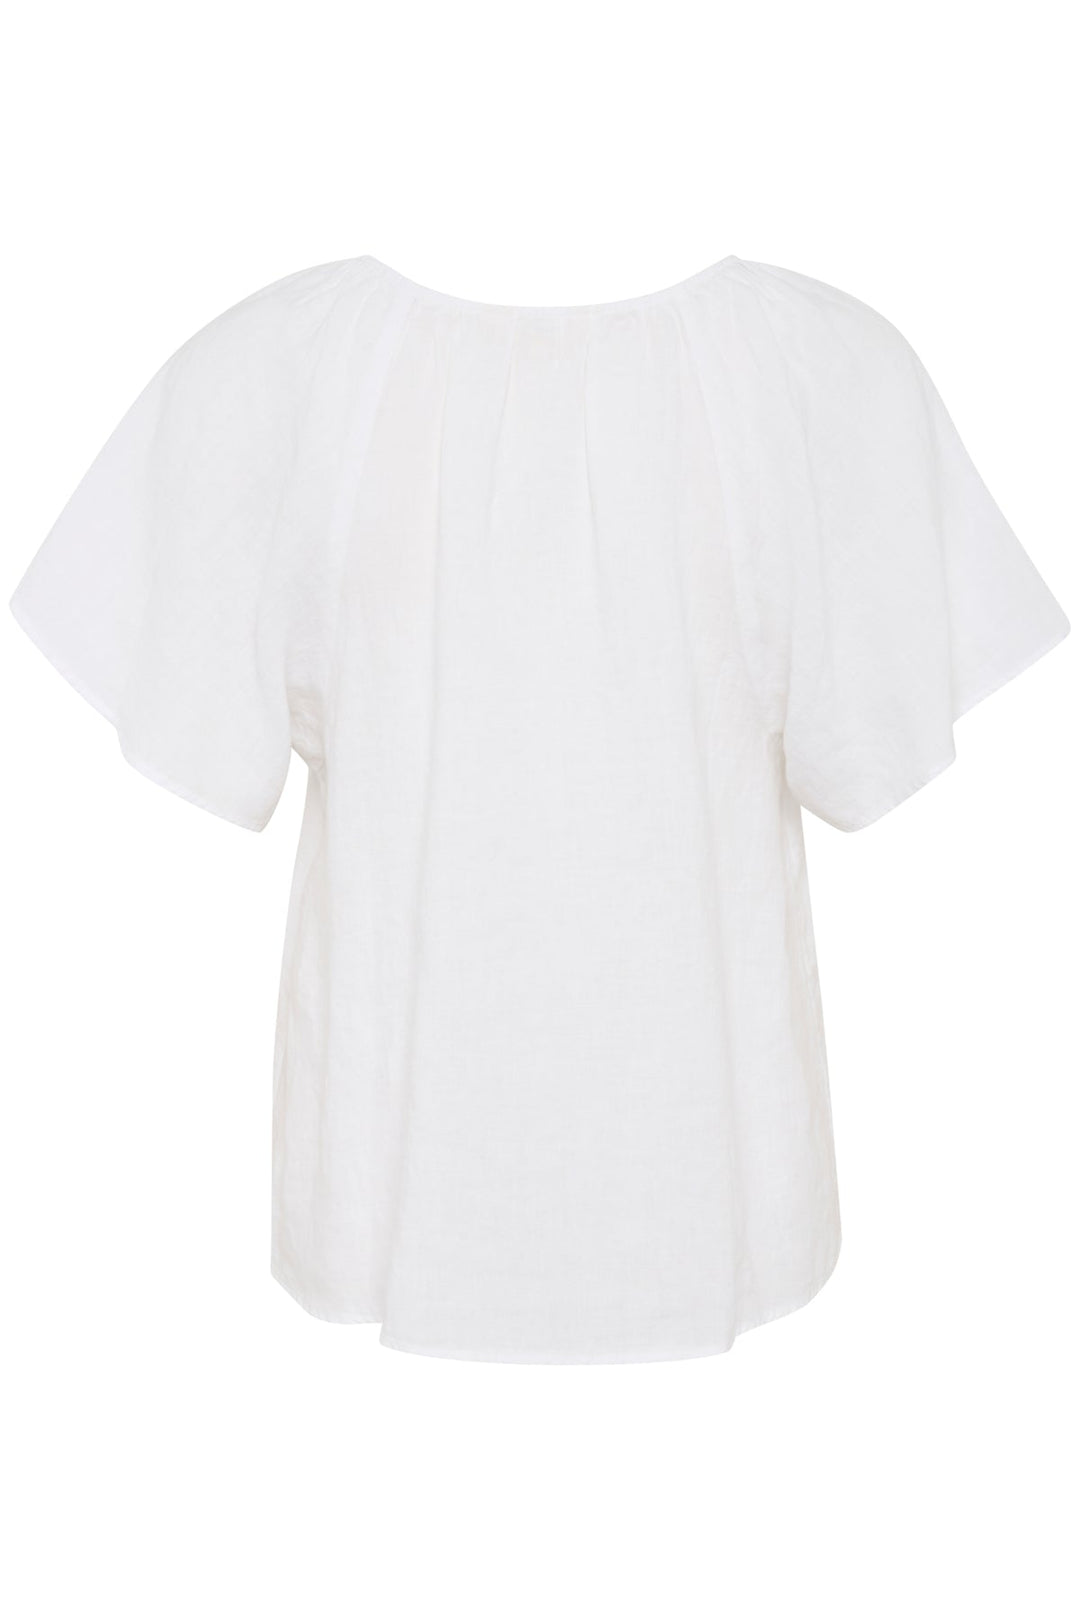 Georgianapw Blouse Bright White | Skjorter og bluser | Smuk - Dameklær på nett